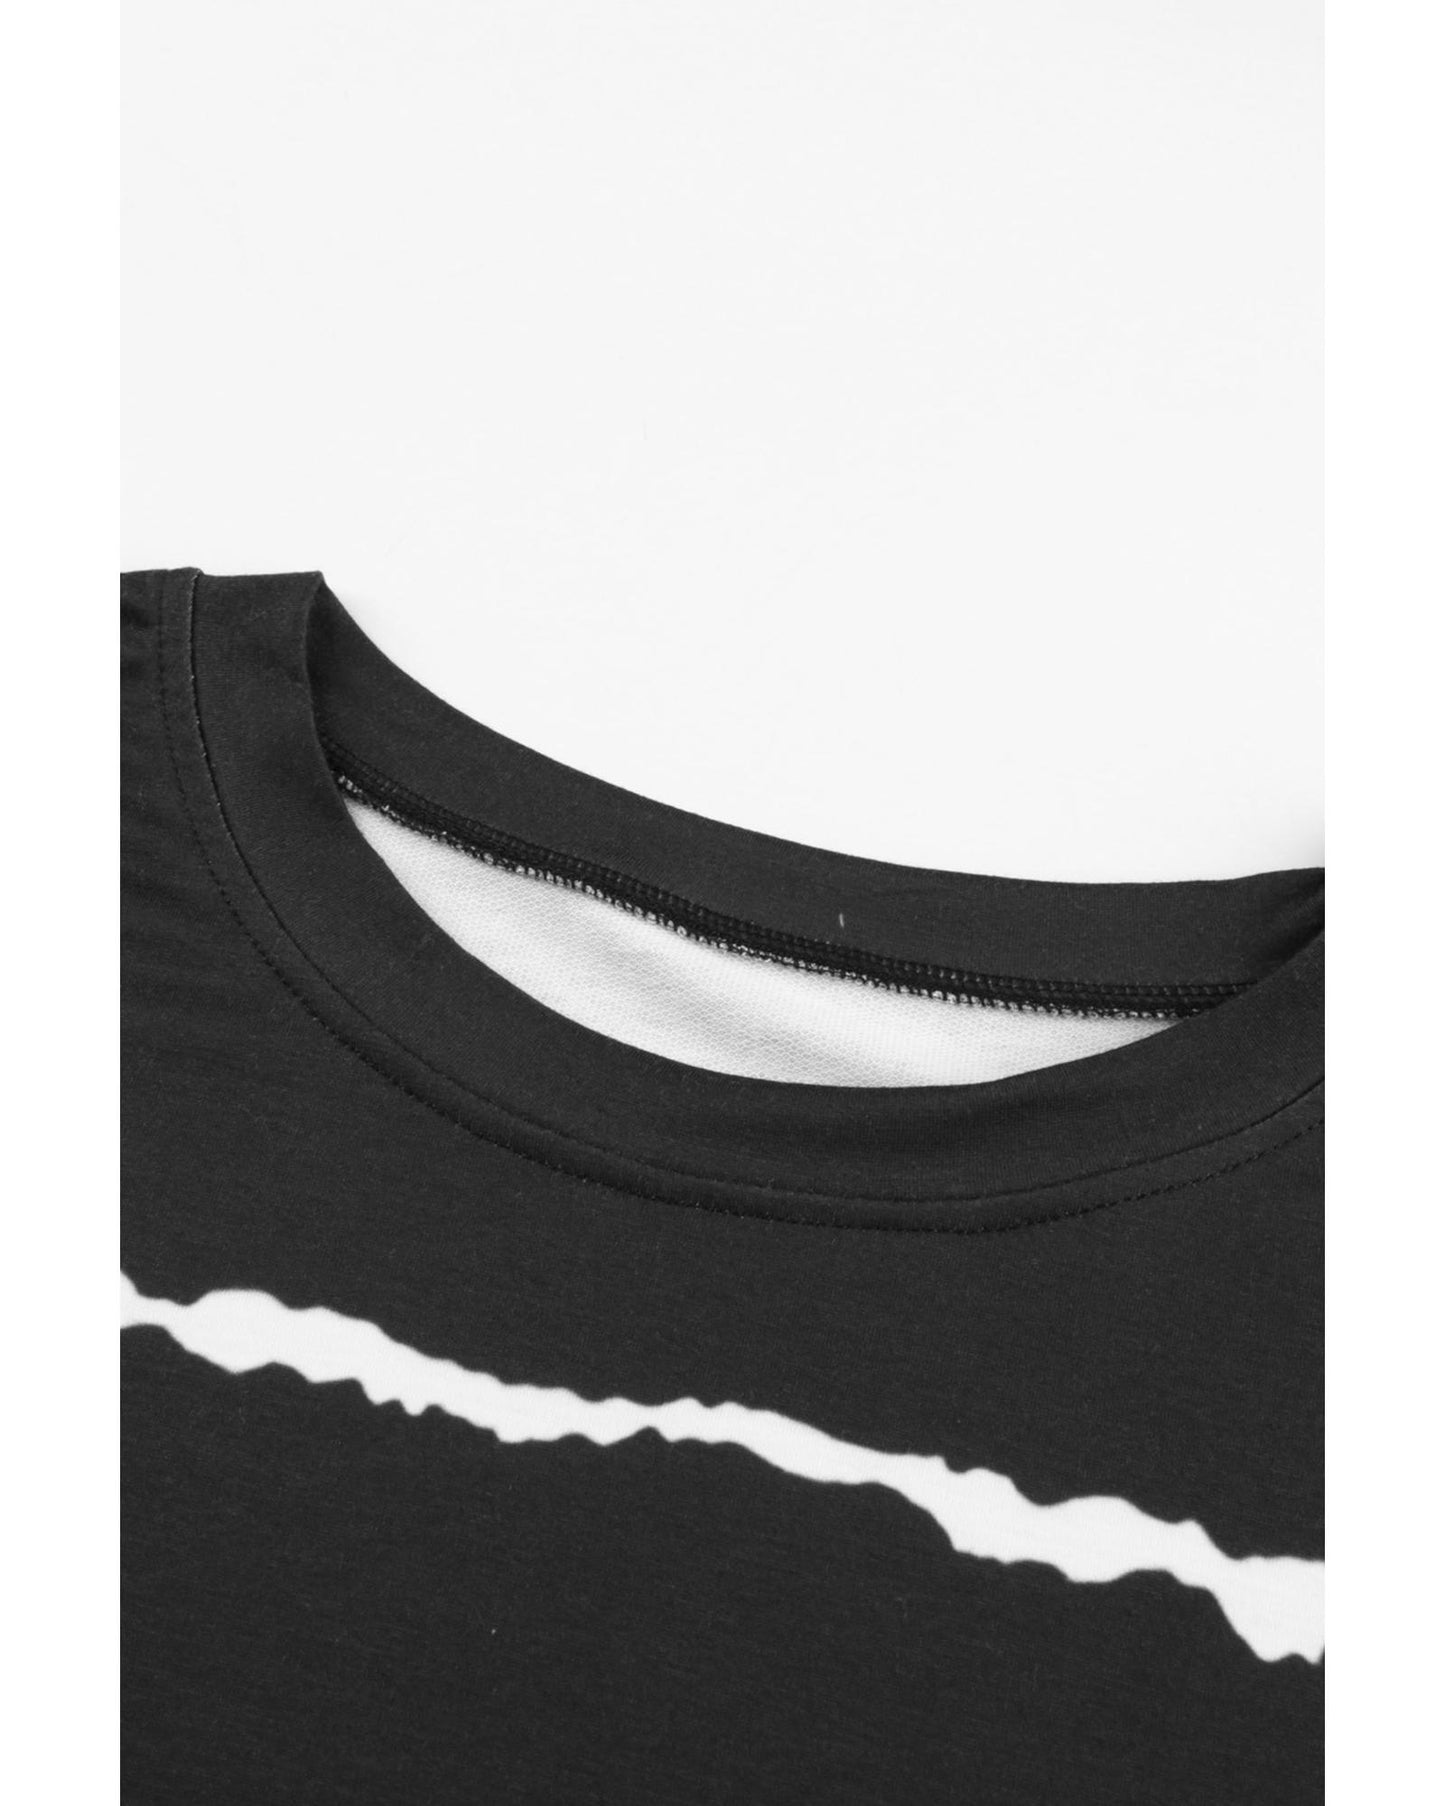 Azura Exchange Abstract Striped Long Sleeve Sweatshirt - 2XL